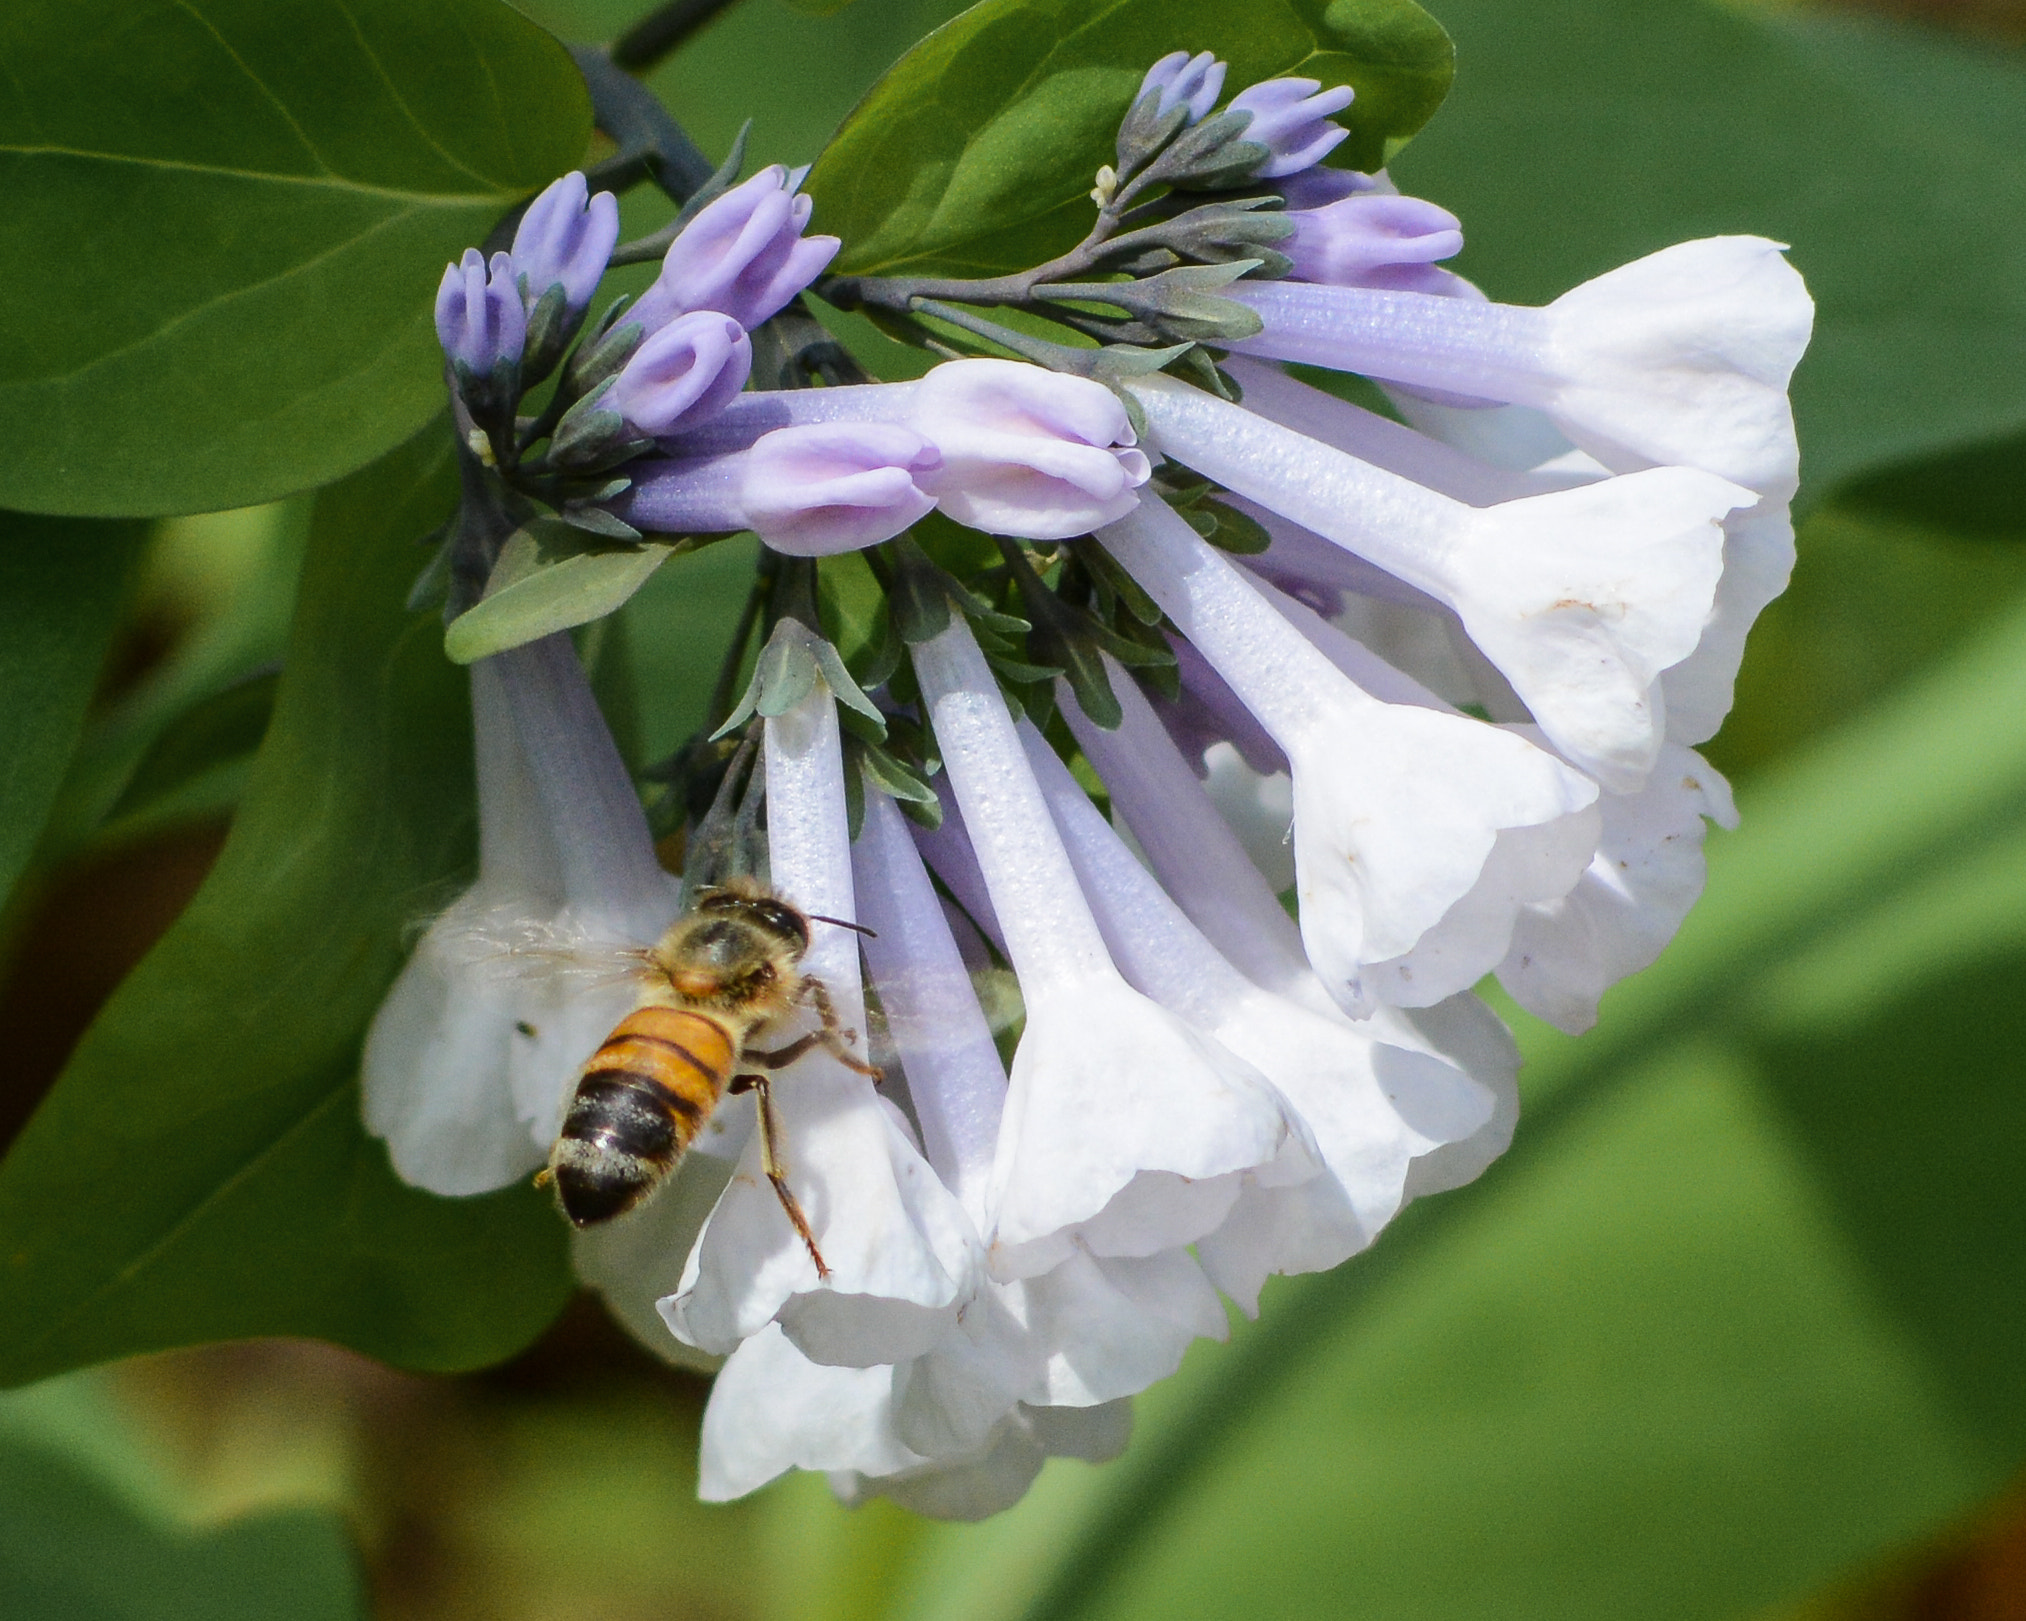 AF Nikkor 70-210mm f/4-5.6 sample photo. Honeybee on virginia bluebells photography